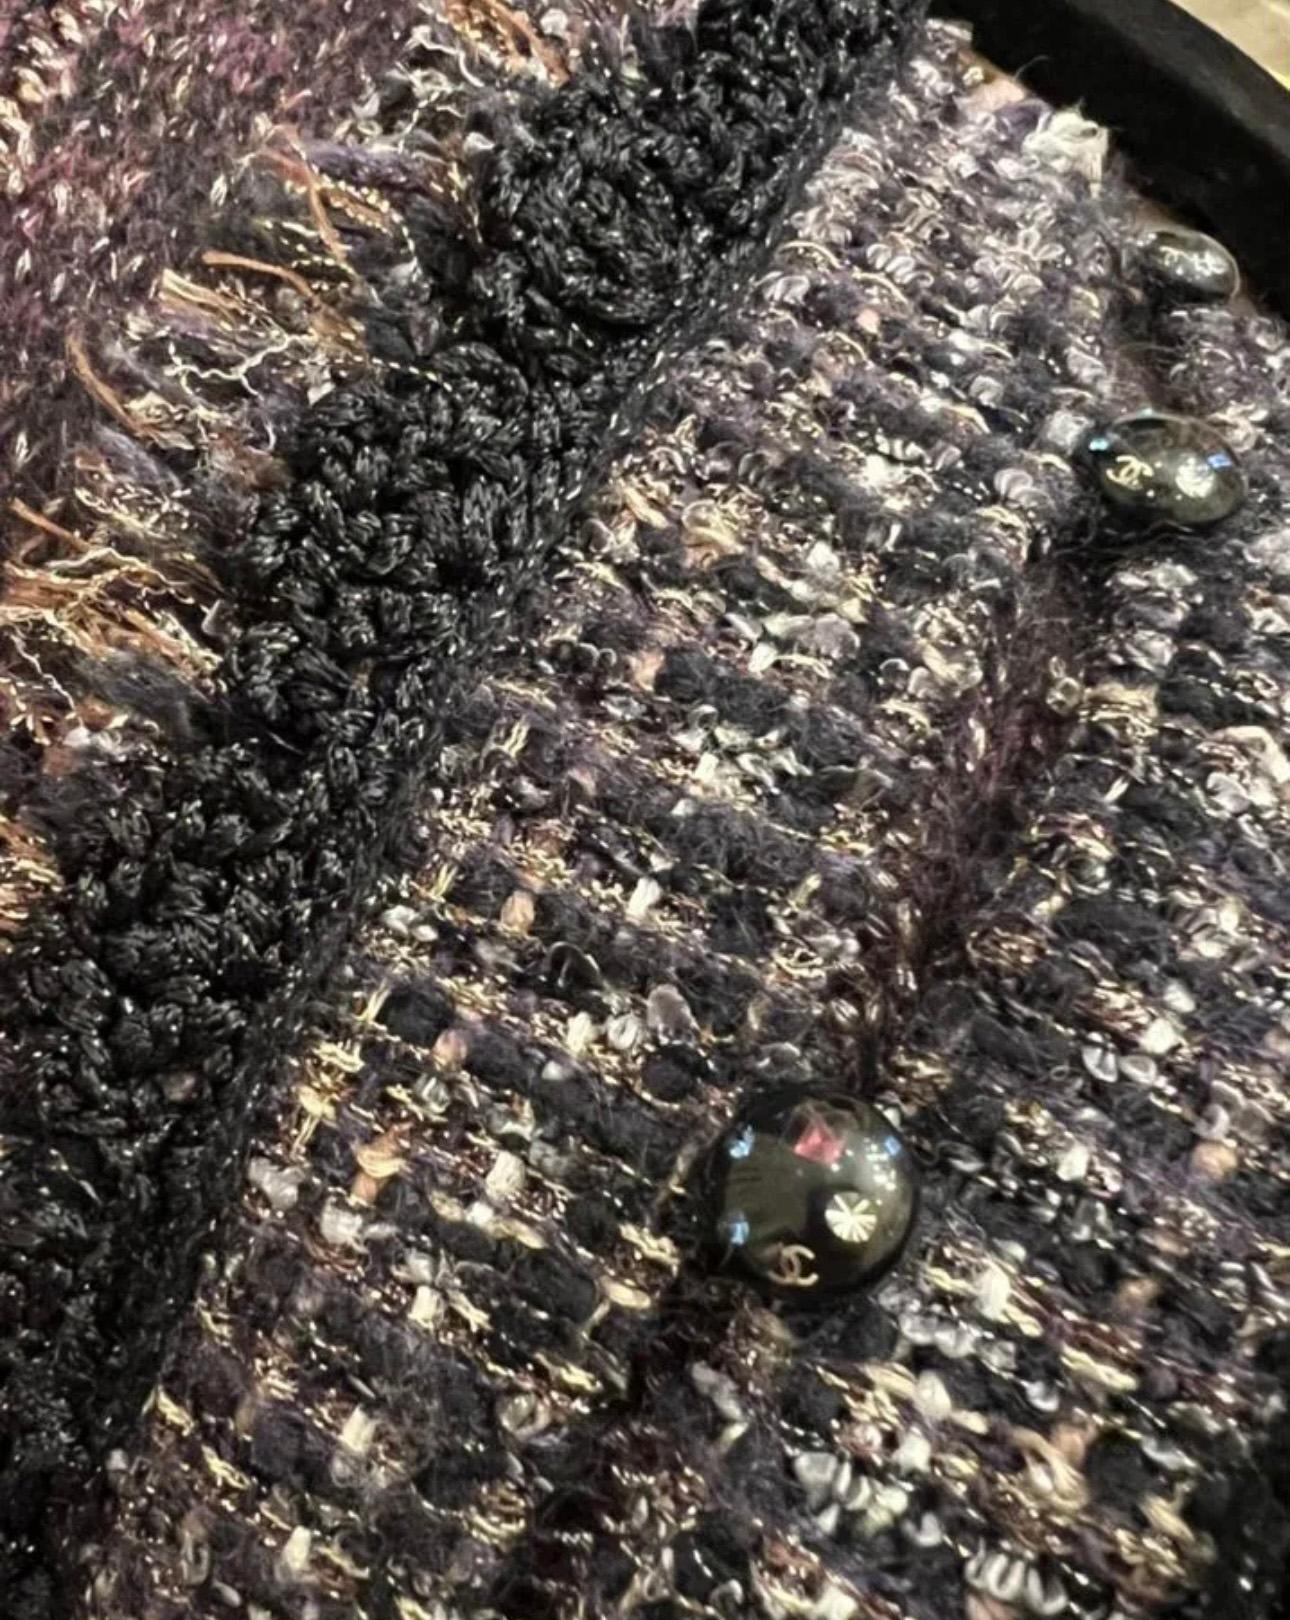 Chanel Kaschmirjacke mit gewebten Tweed-Akzenten und CC-Logo-Knöpfen.
Größenbezeichnung 40 FR. Tadelloser Zustand.